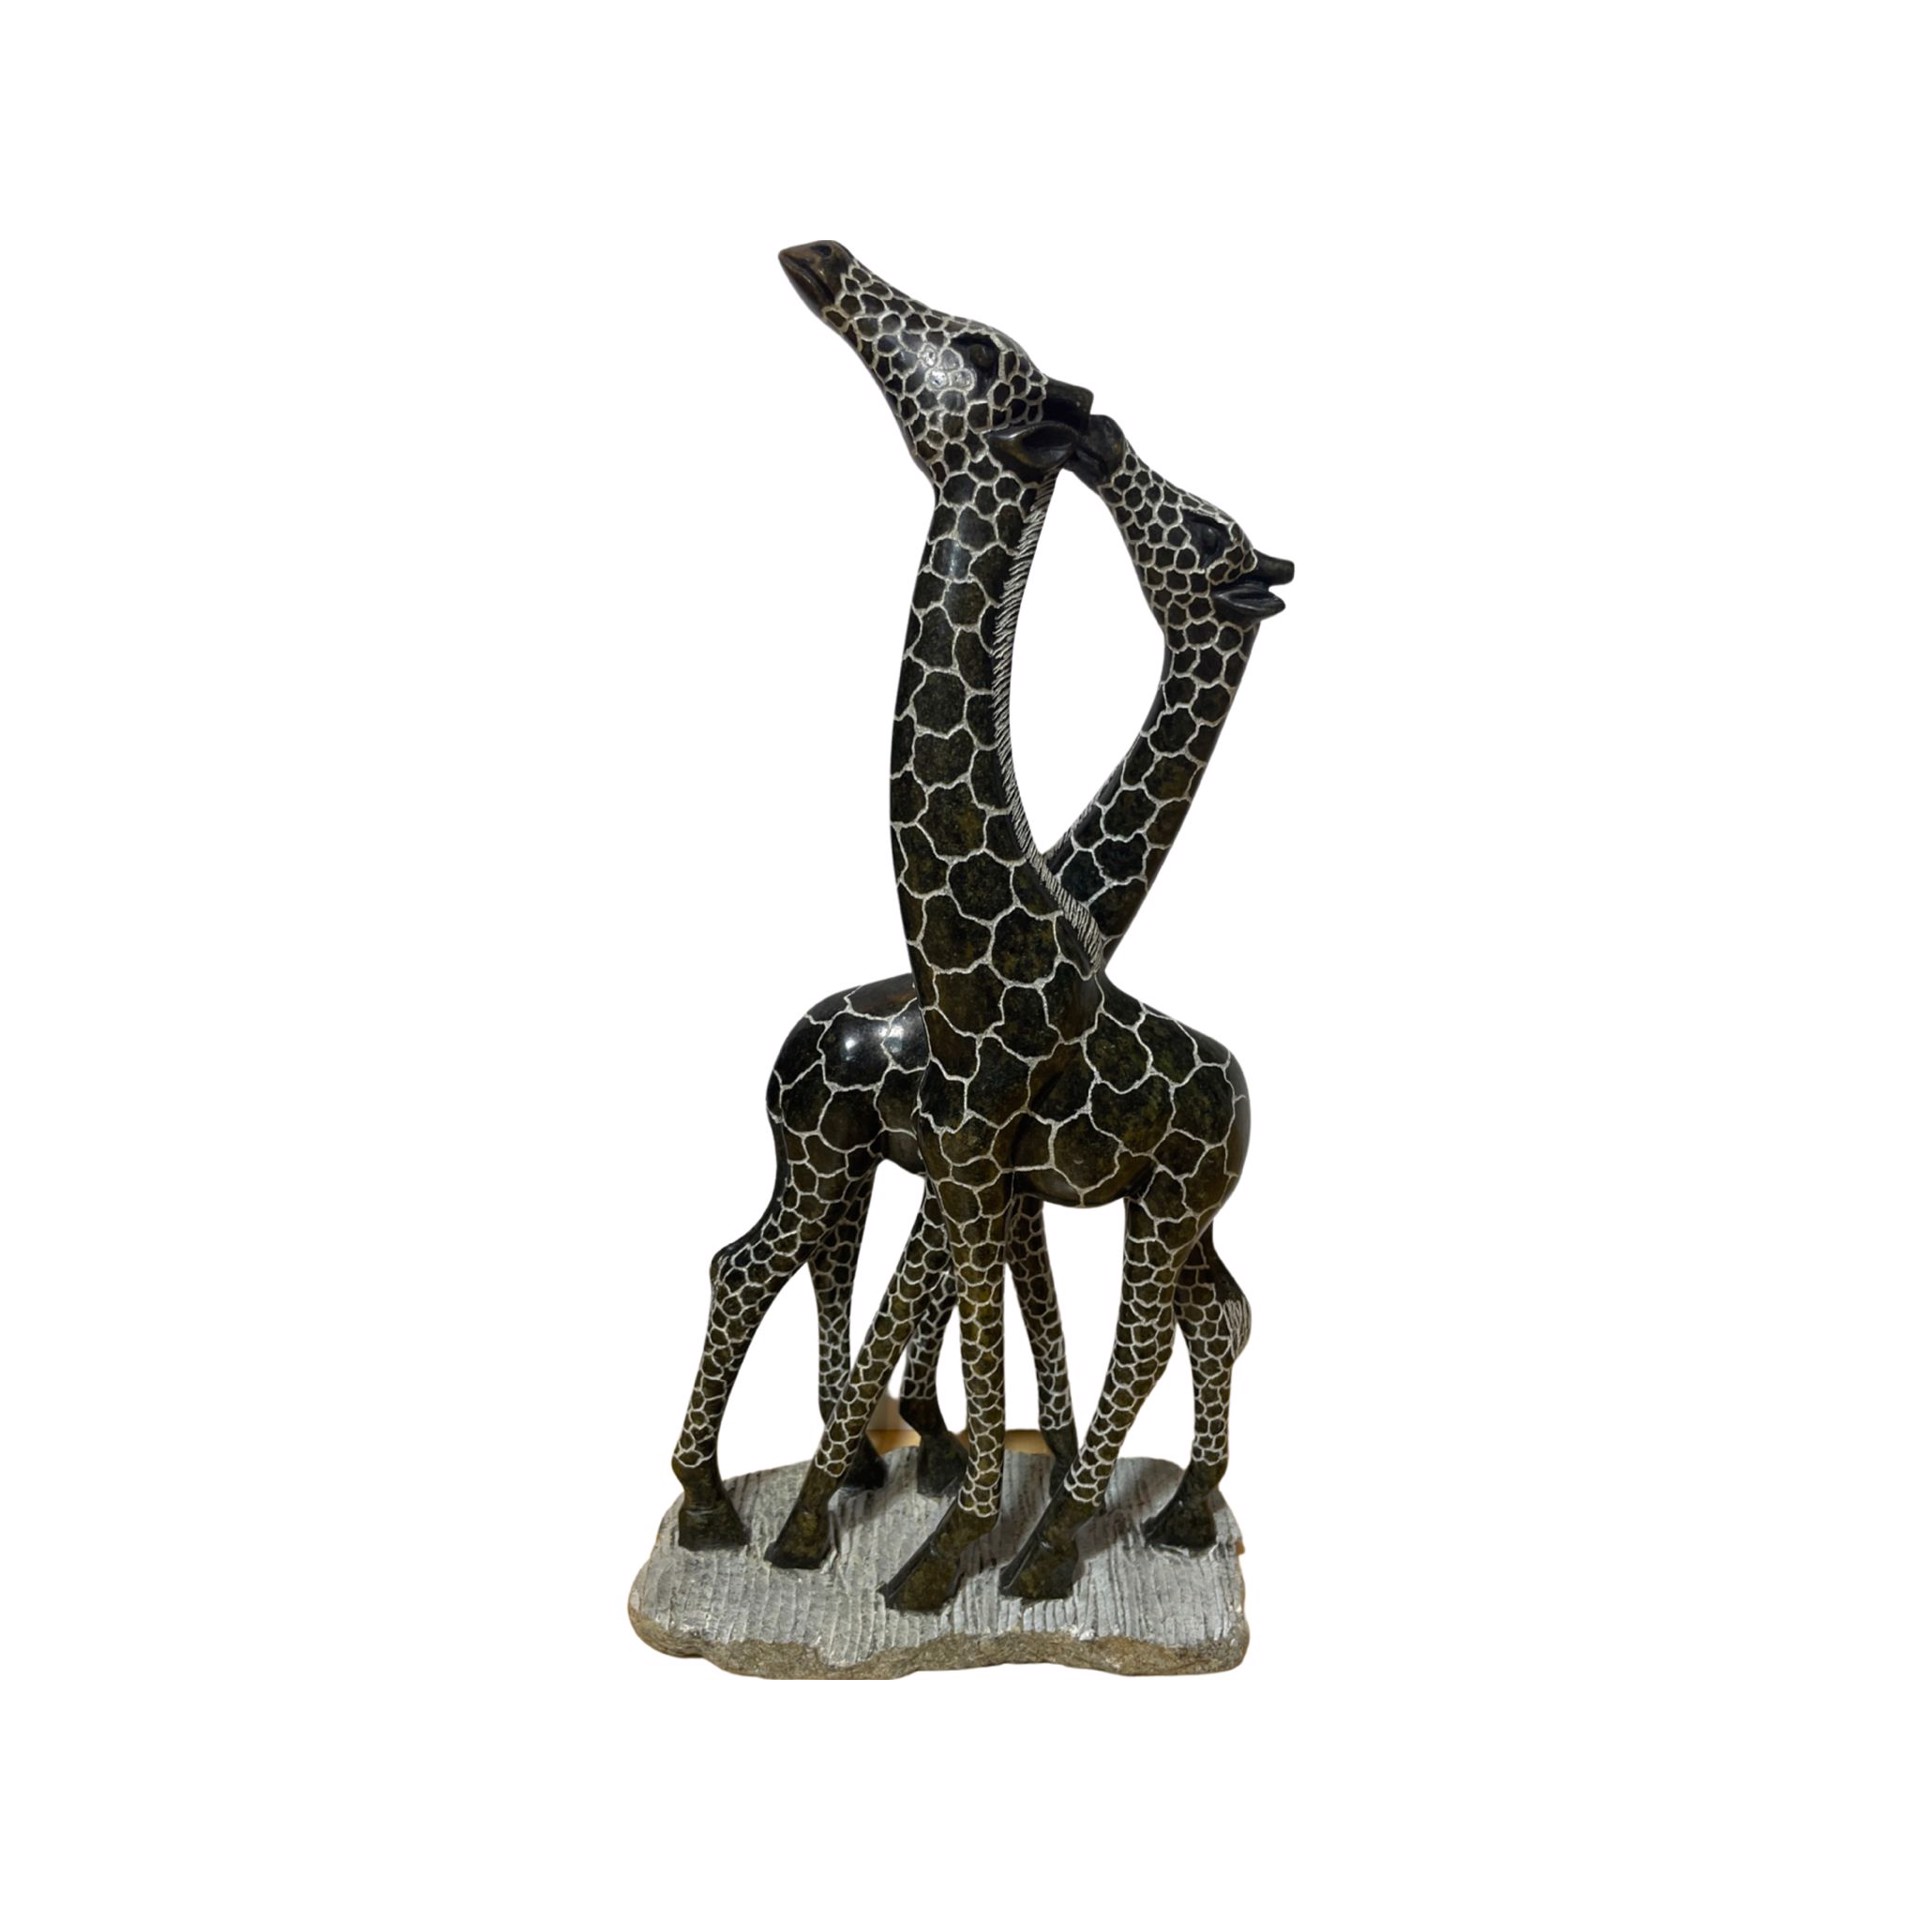 "Kissing Giraffe" by Lloyd Ngwaru by Stone of Shona